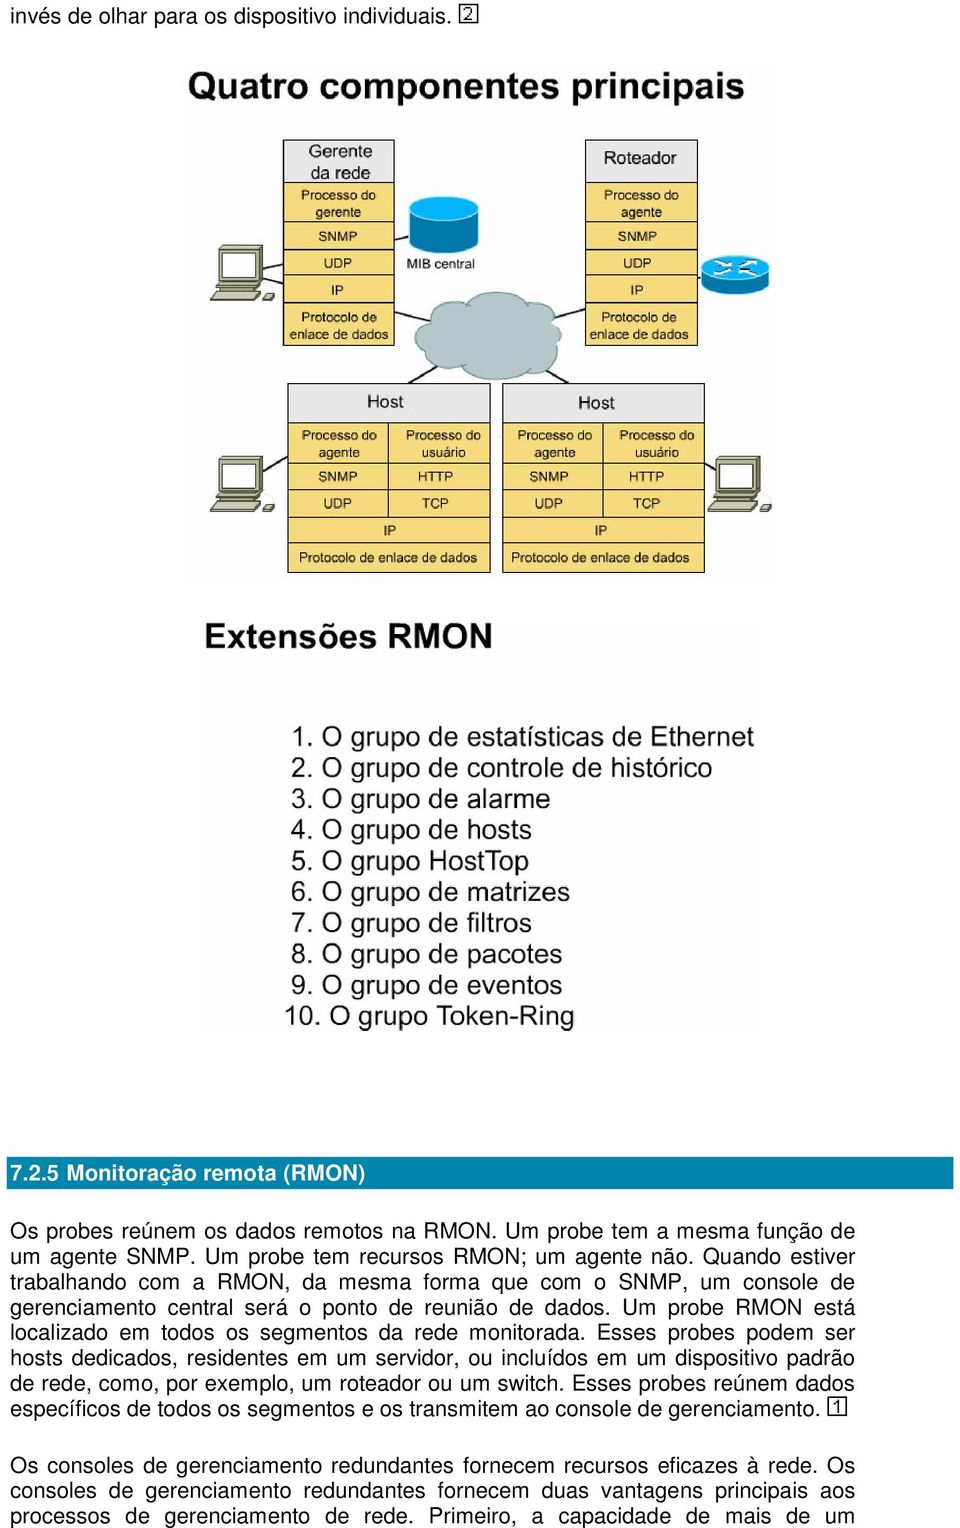 Um probe RMON está localizado em todos os segmentos da rede monitorada.